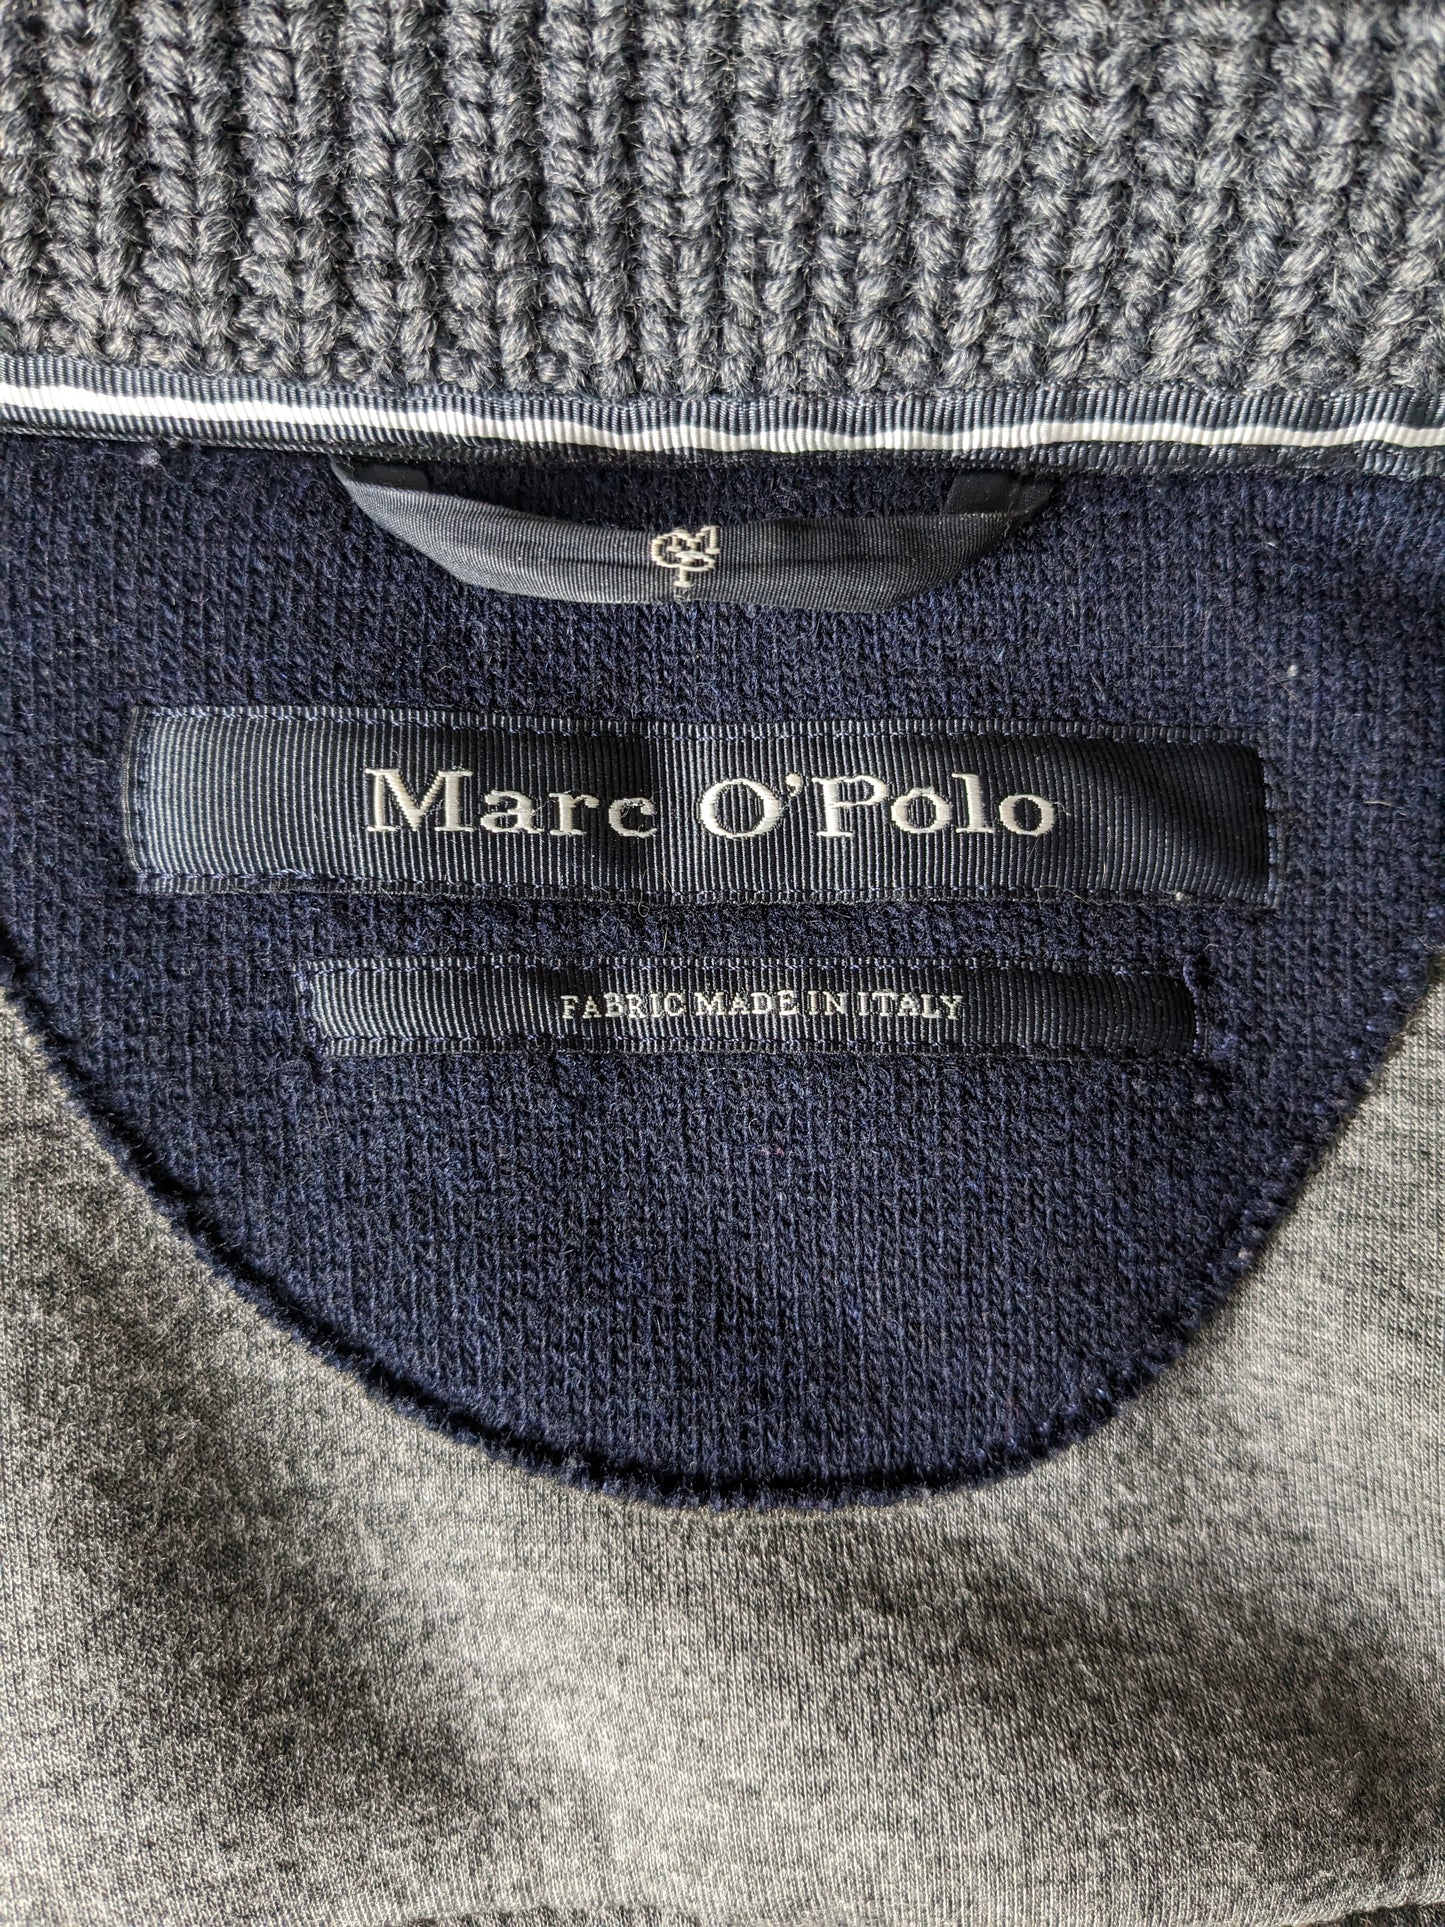 Giacca a mezza lunghezza di lana Marc O'polo. Colorato di grigio blu scuro. Taglia M.